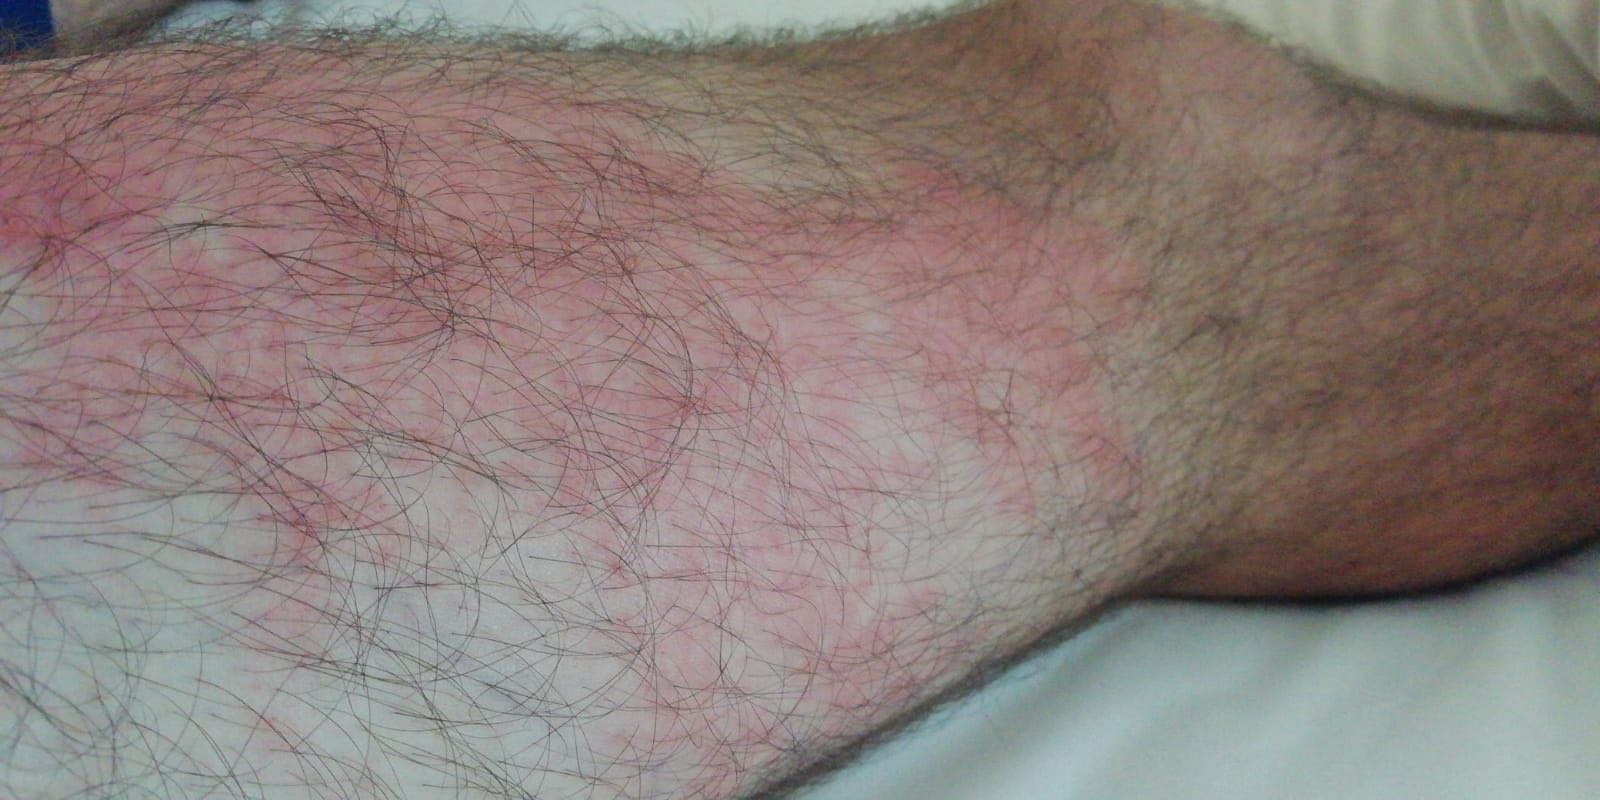 La pierna de Ángel Hidalgo tras la picadura de la avispa.